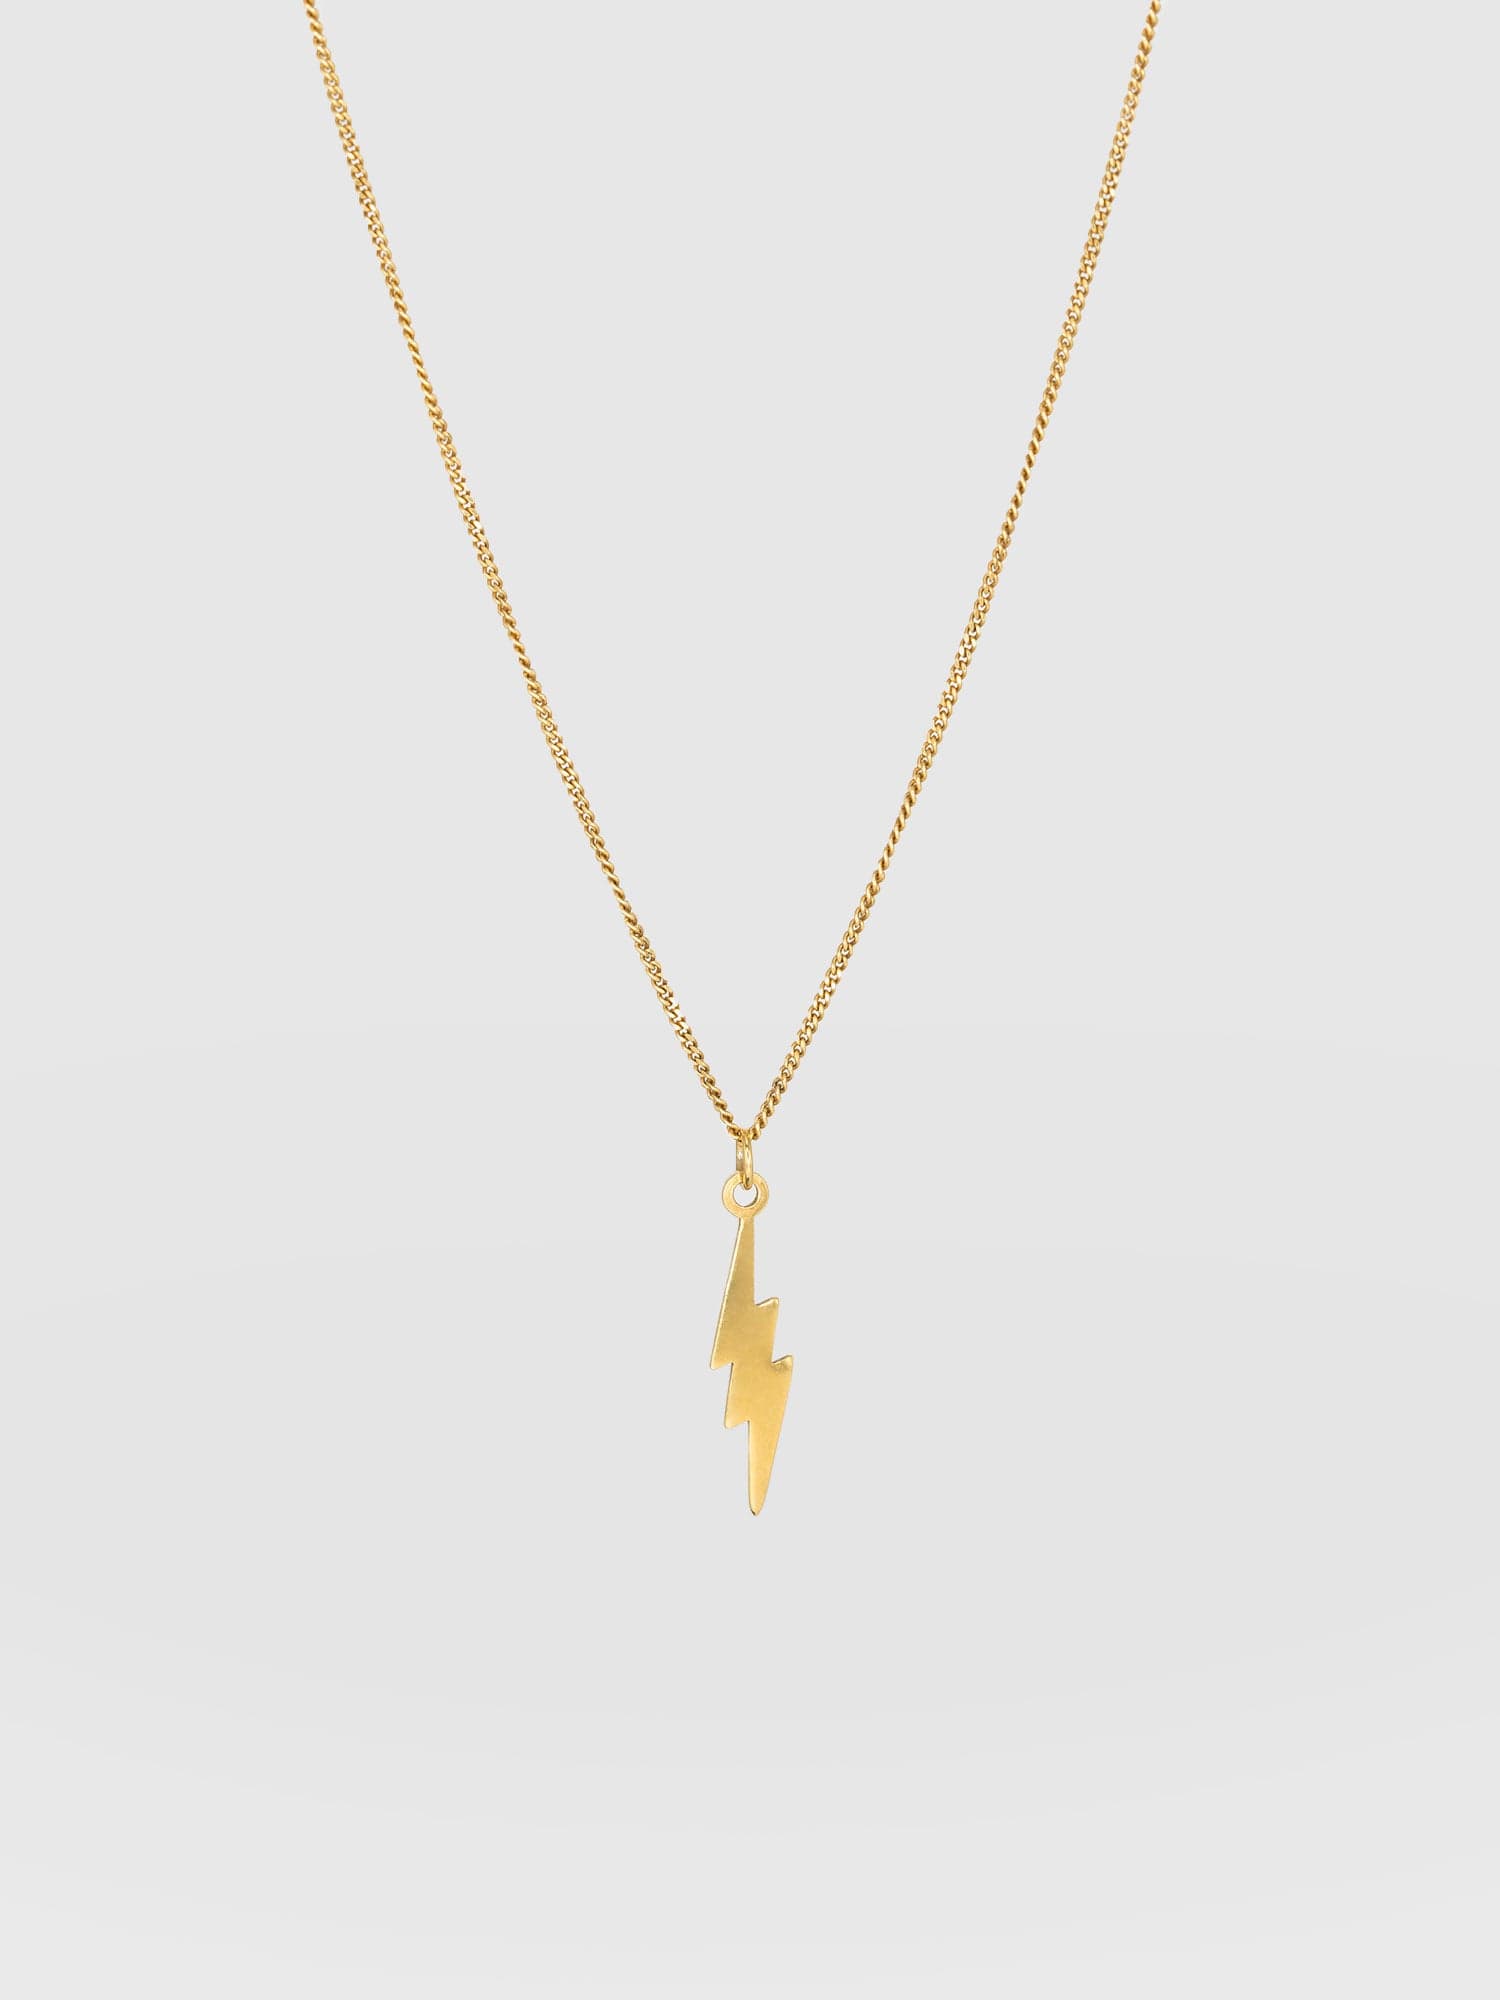 lightning bolt pendant necklace gold women s necklaces saint sofia usa 34145674920113